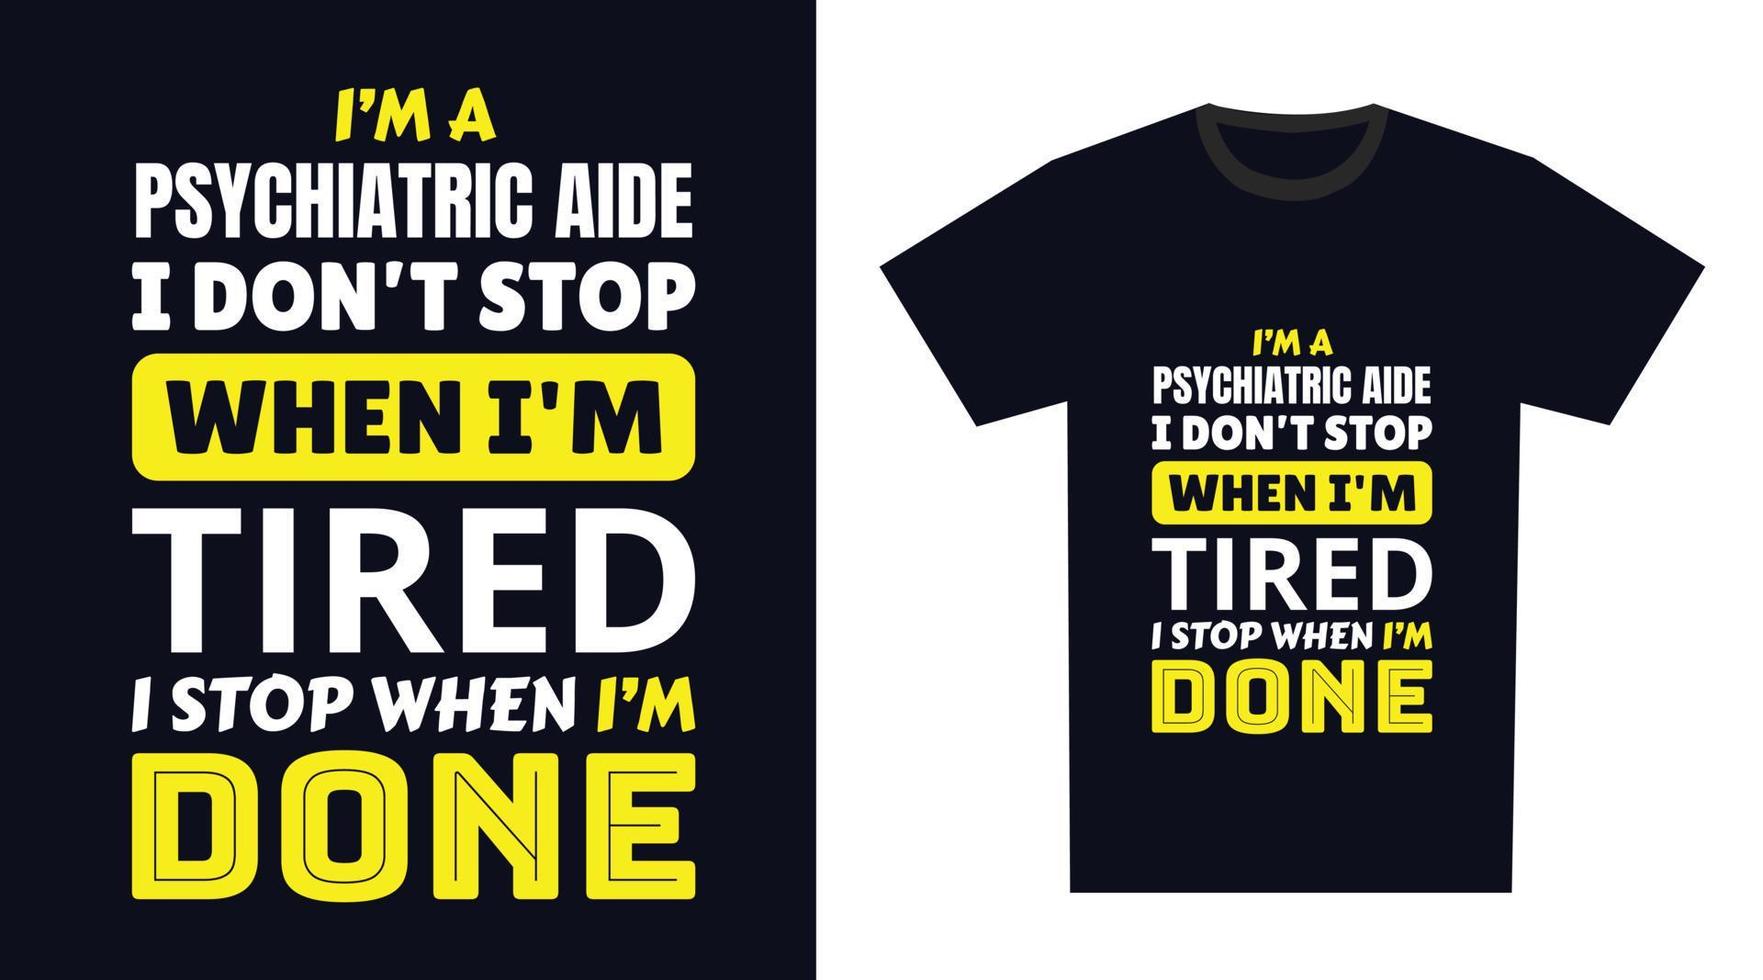 psykiatrisk medhjälpare t skjorta design. jag 'm en psykiatrisk medhjälpare jag inte sluta när jag är trött, jag sluta när jag är Gjort vektor